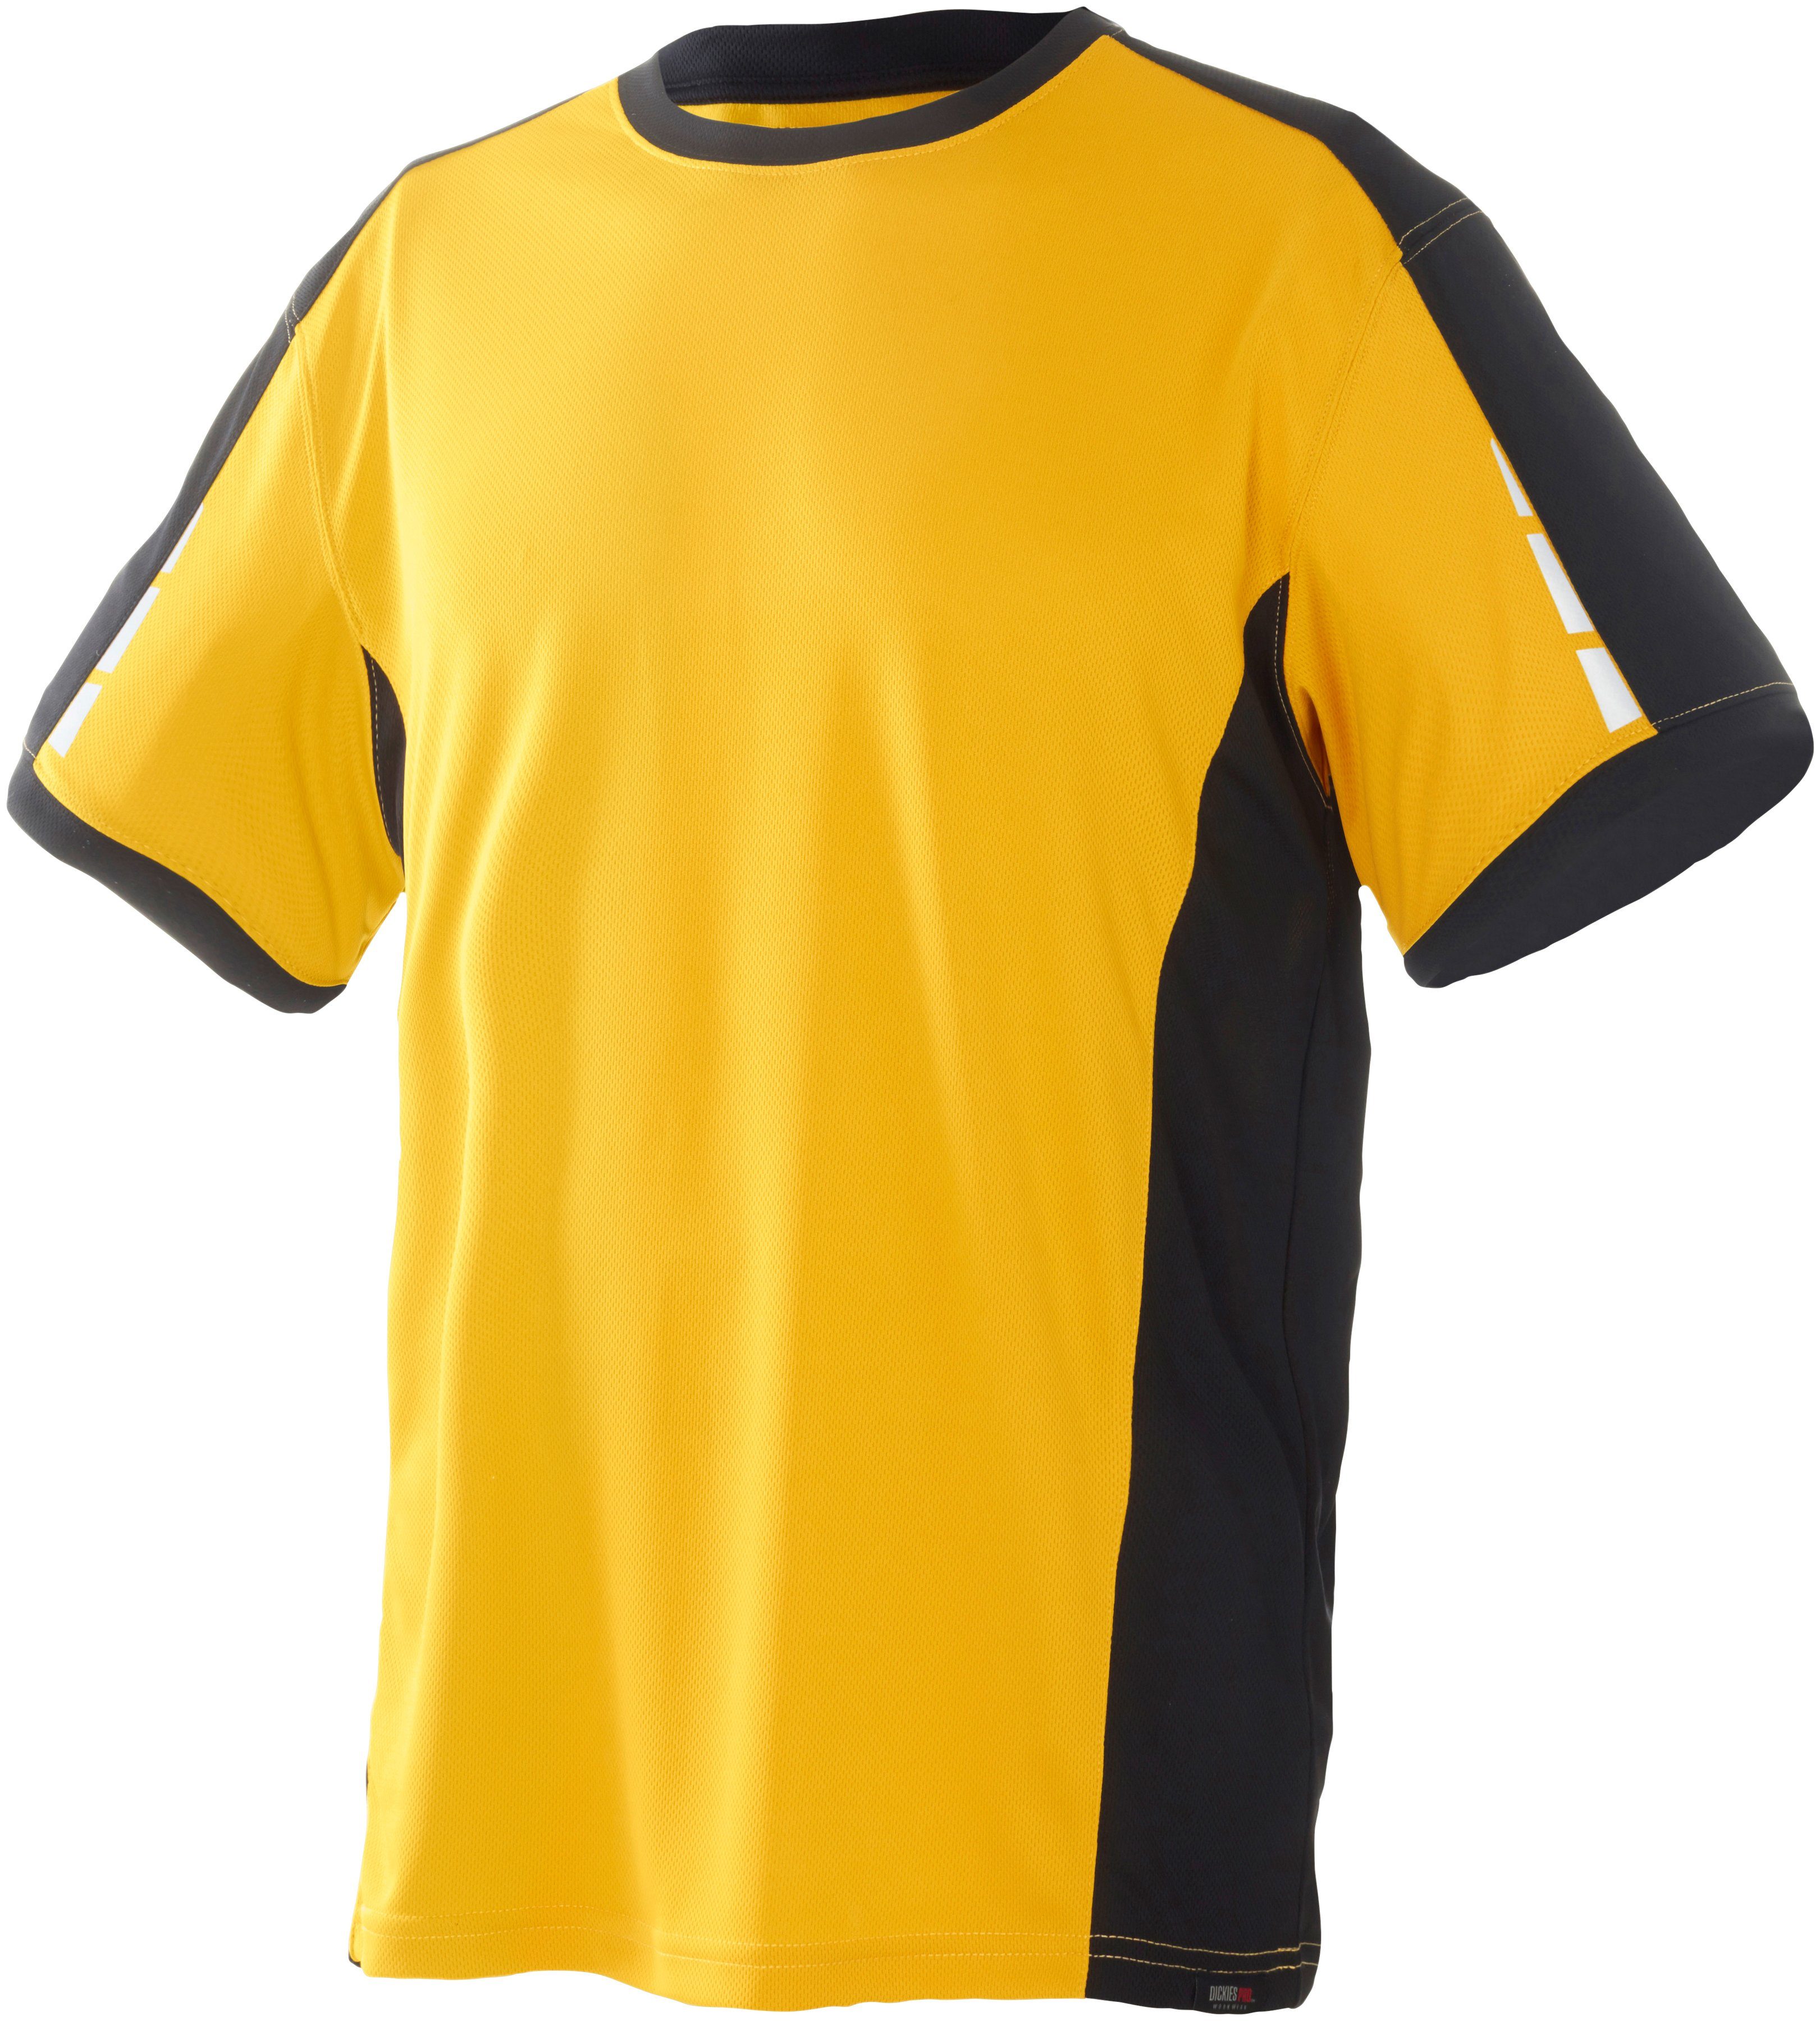 Dickies T-Shirt Pro mit reflektierenden Details an den Ärmeln gelb-schwarz